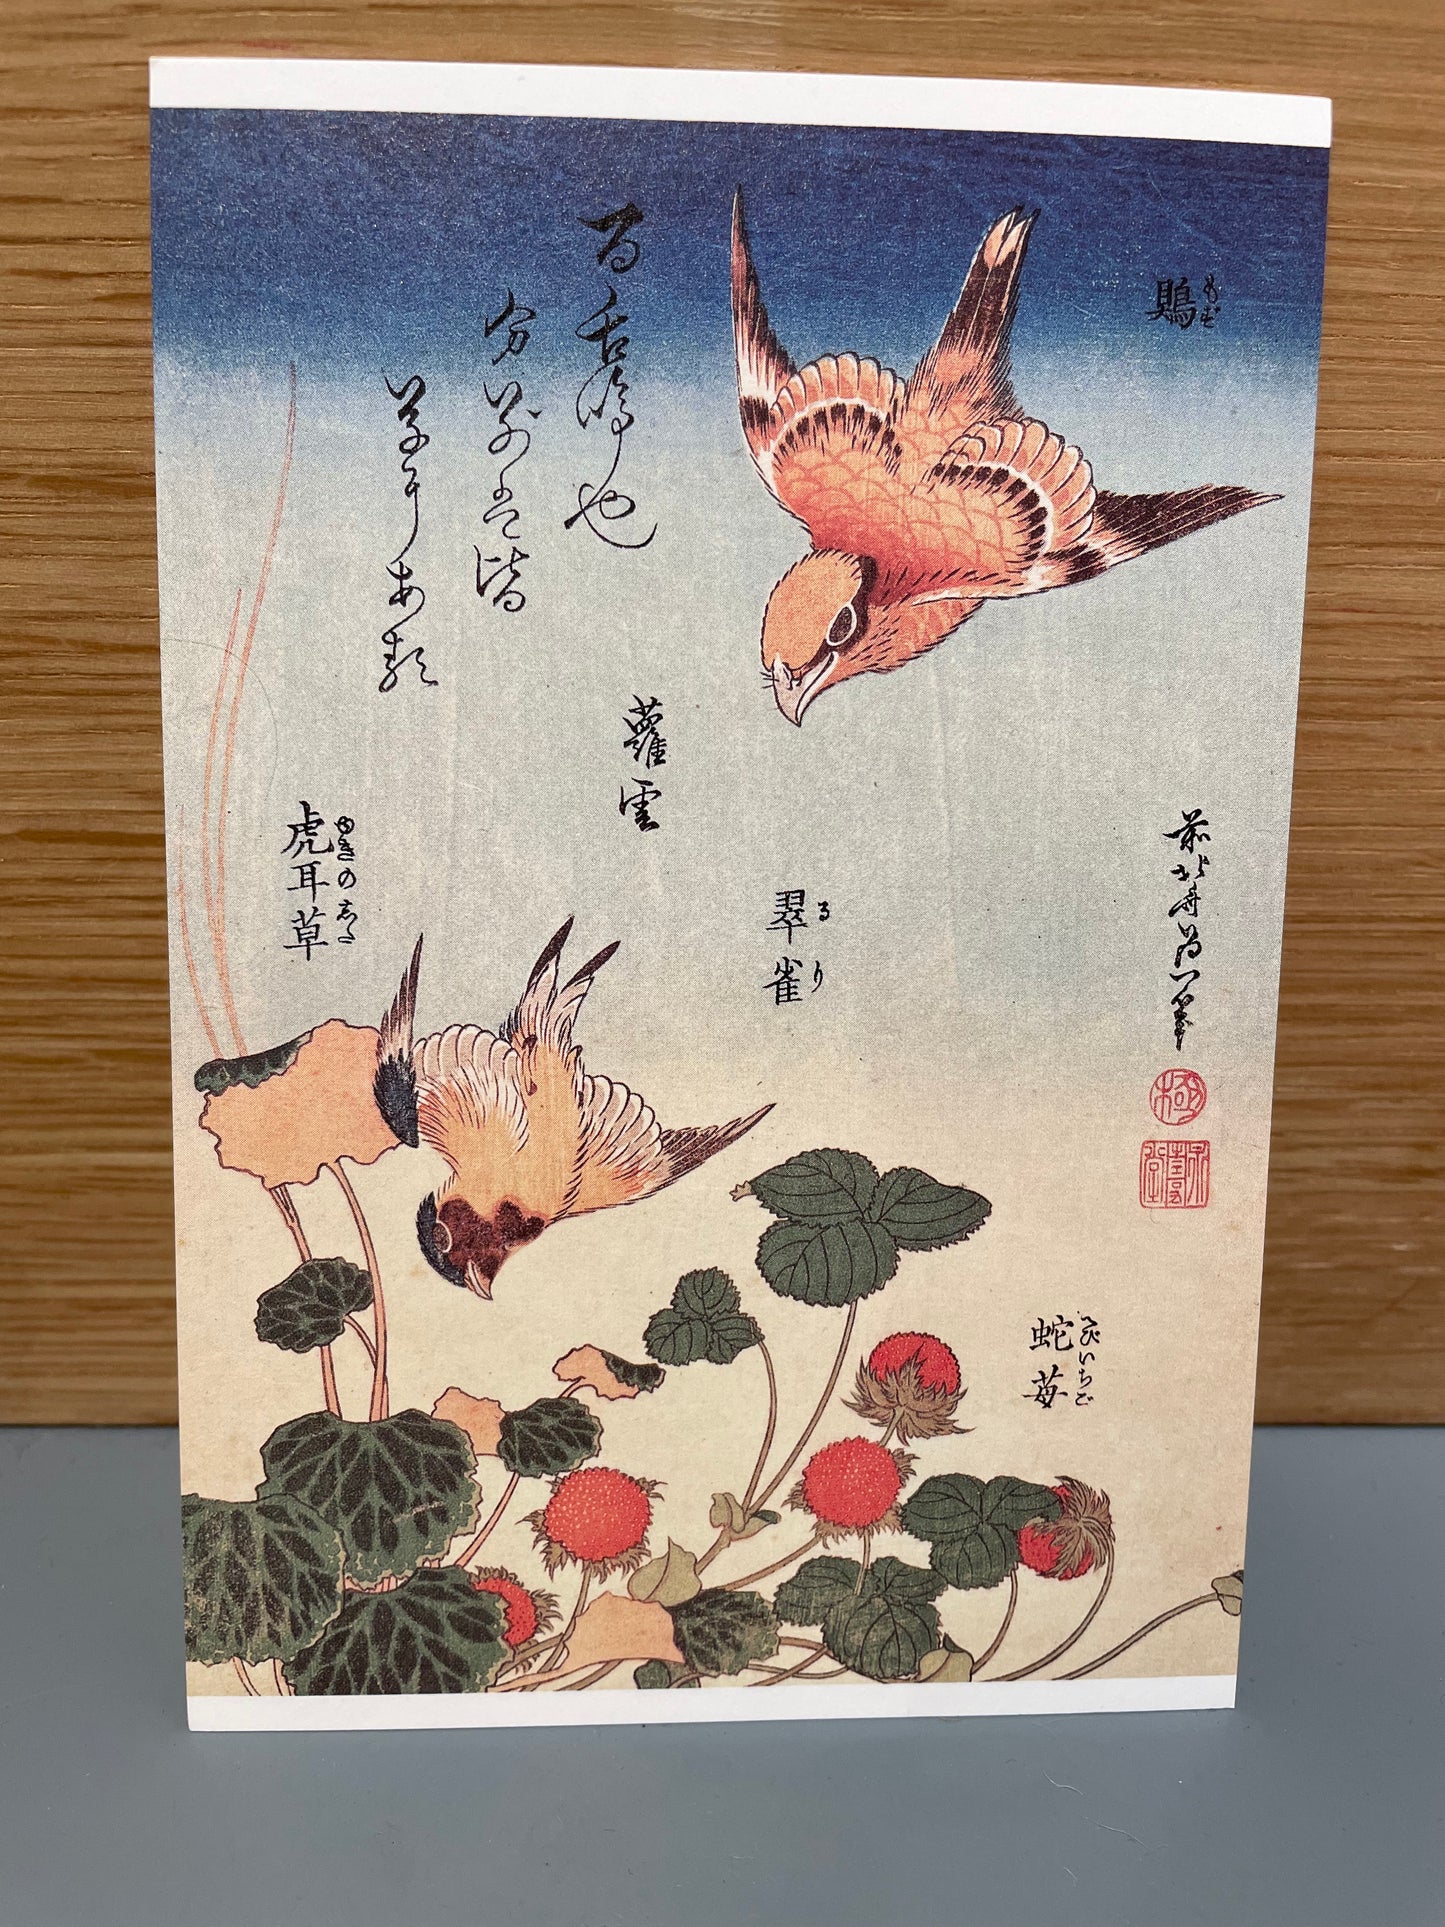 Kort med fugle og japanske tegn